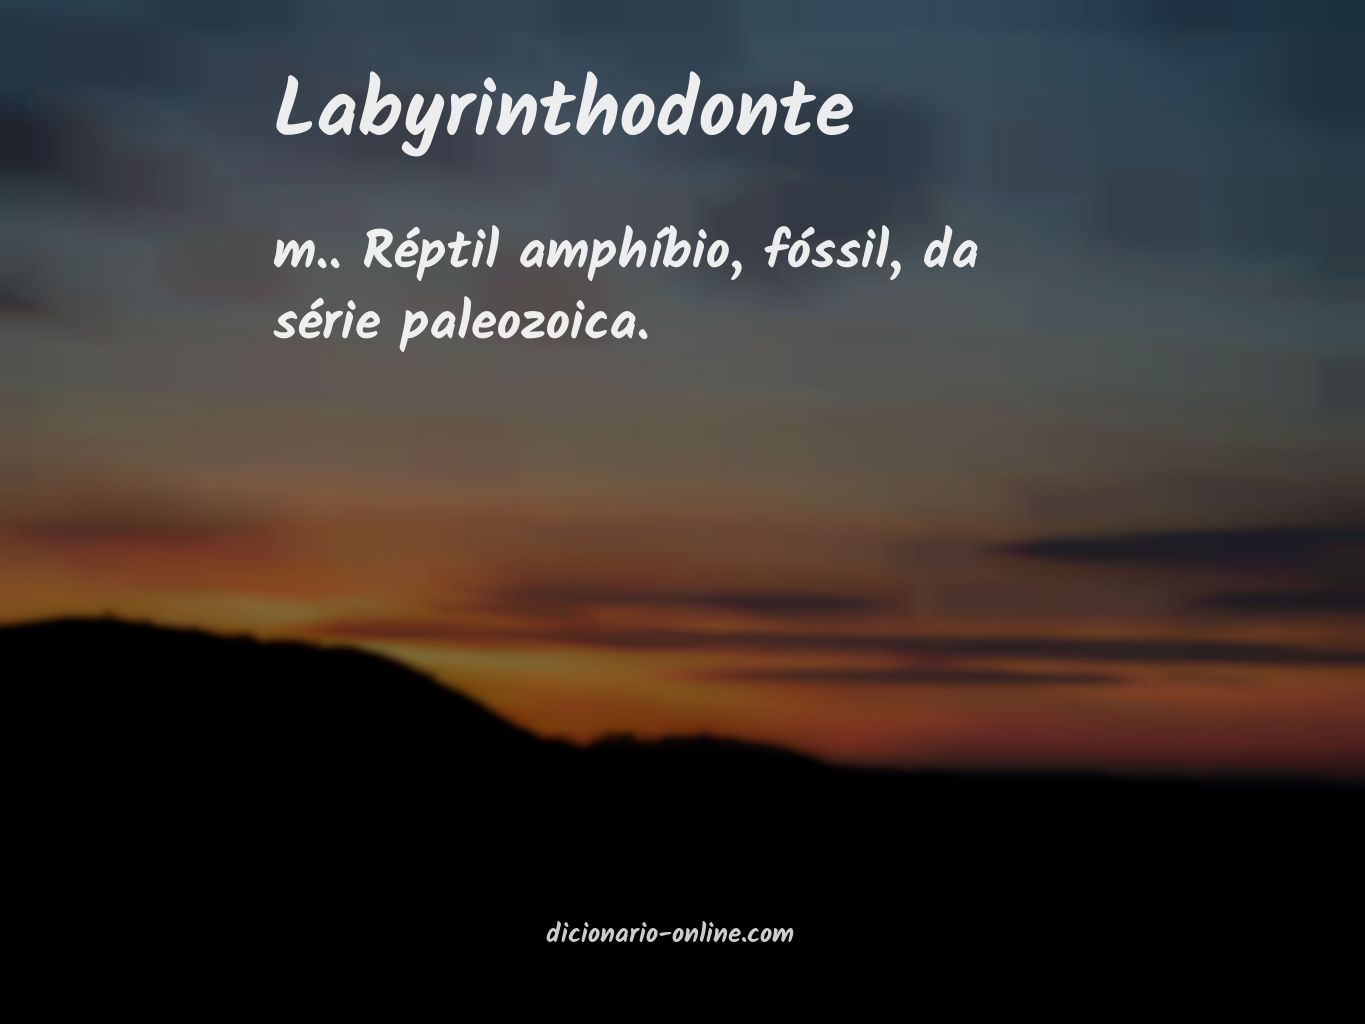 Significado de labyrinthodonte